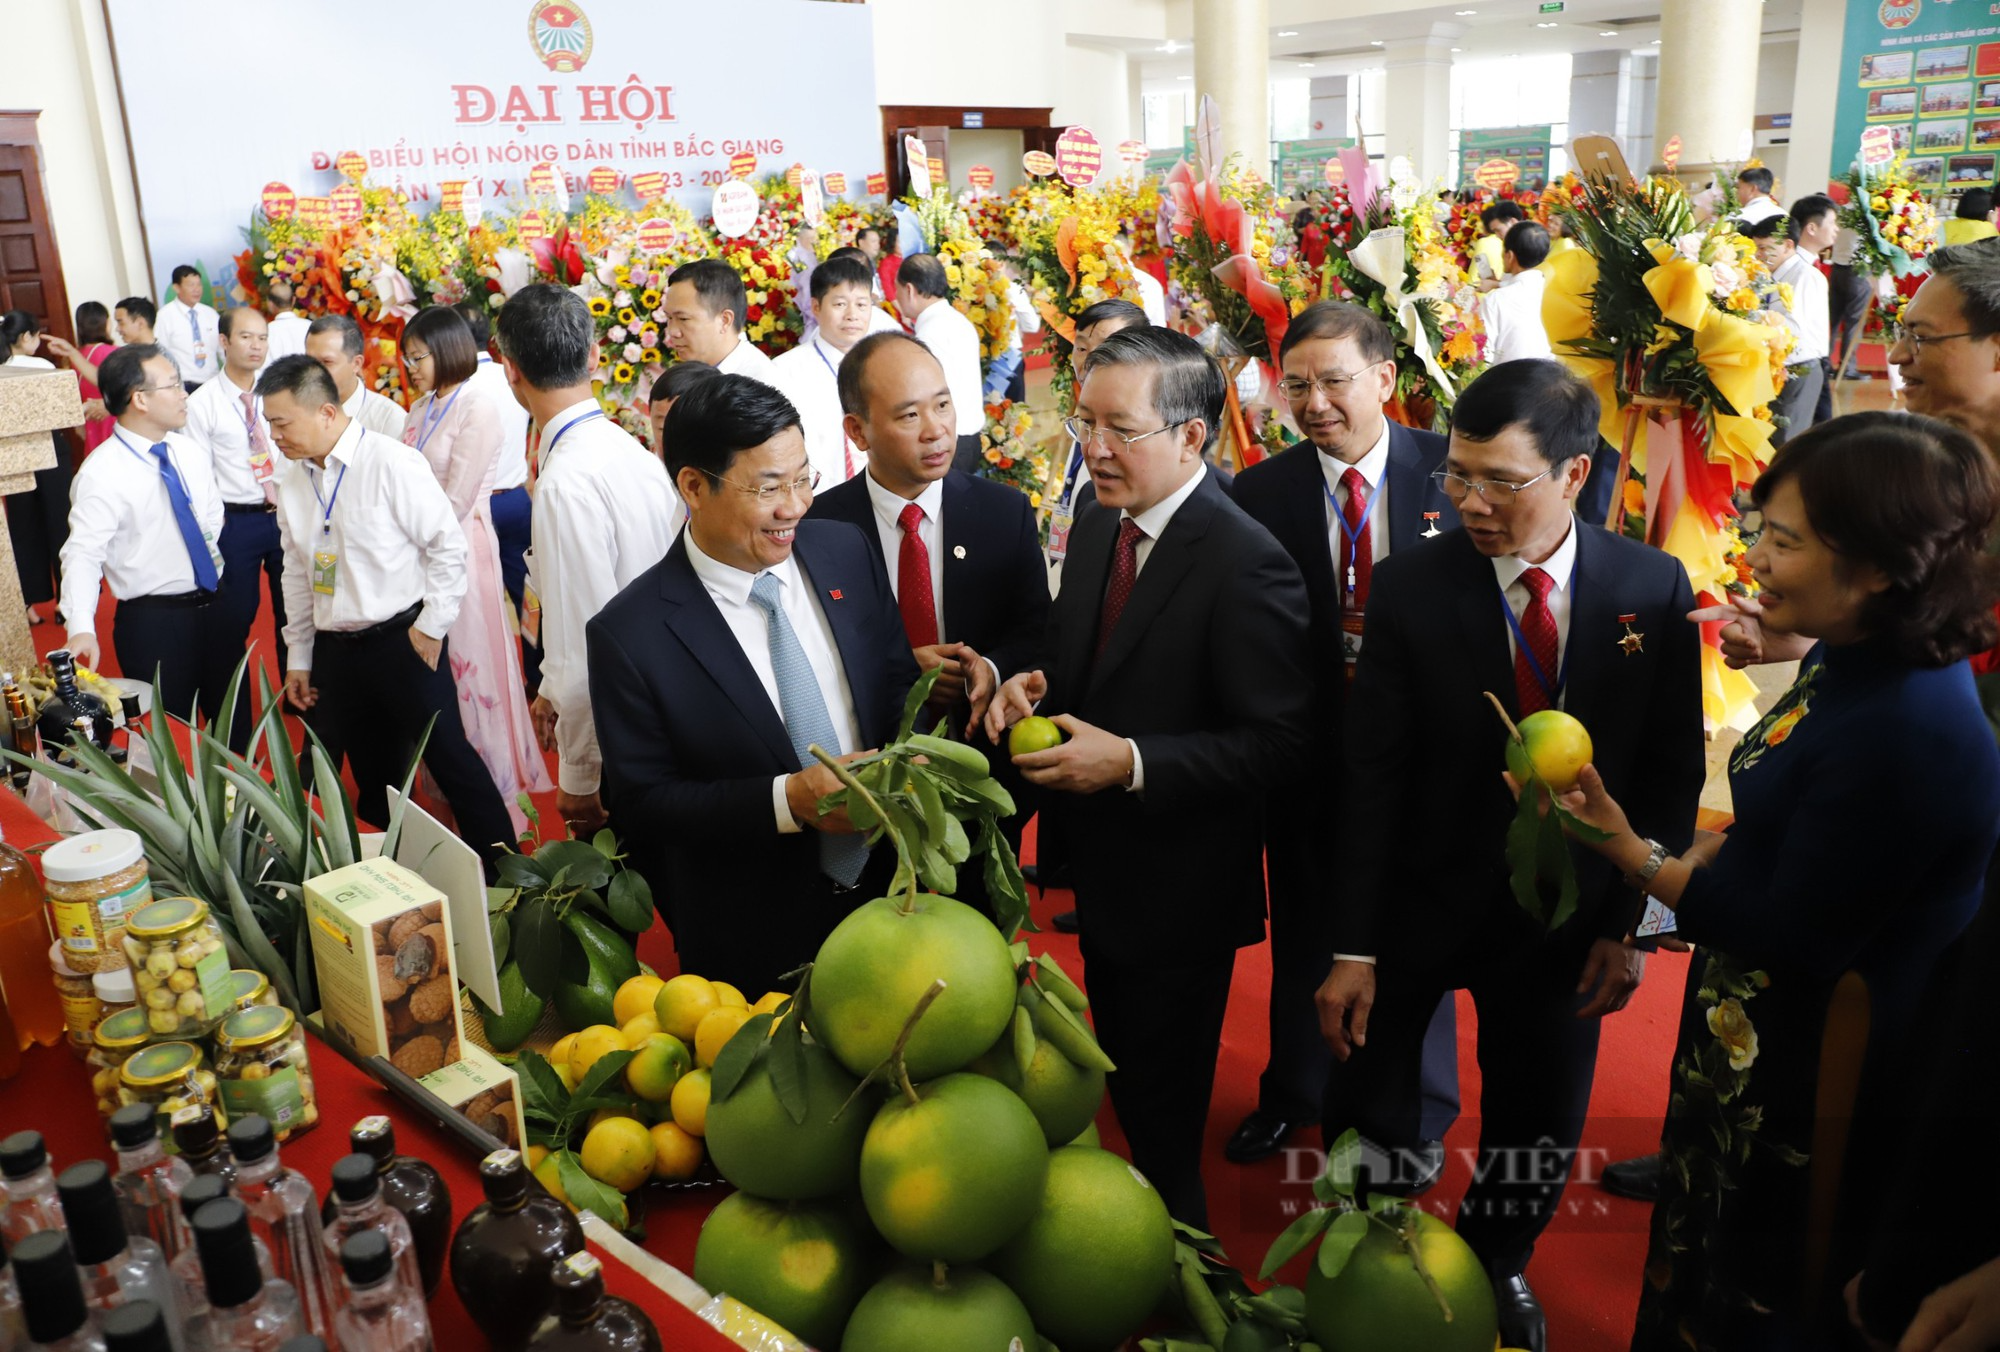 Hội Nông dân tỉnh Bắc Giang tích cực hỗ trợ nông dân quảng bá, kết nối tiêu thụ các sản phẩm OCOP - Ảnh 1.